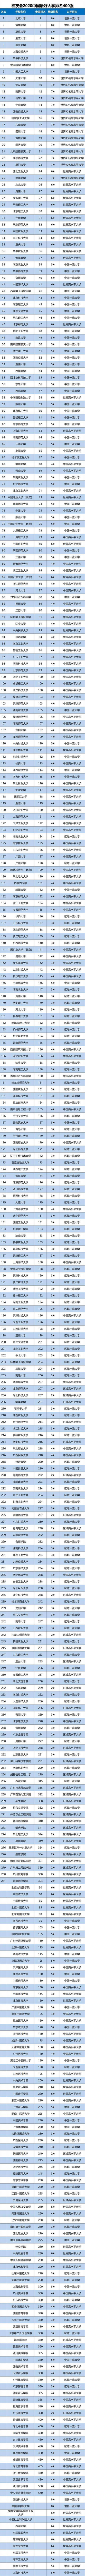 2020年校友会排名榜_2020年中国“科技”类大学排行榜:中国科学技术大学